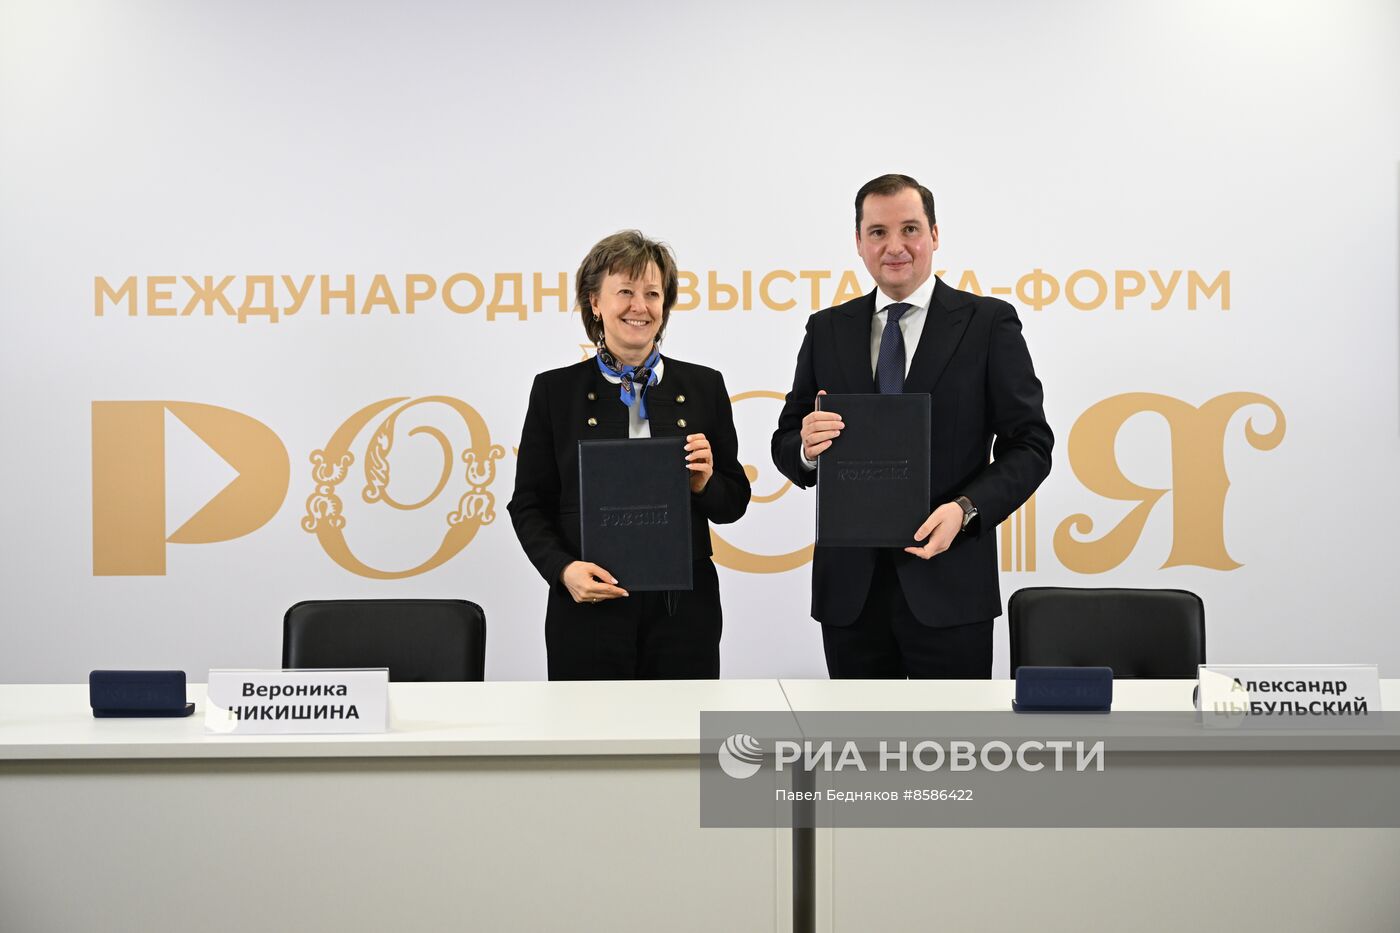 Подписание соглашения между РЭЦ и правительством Архангельской области